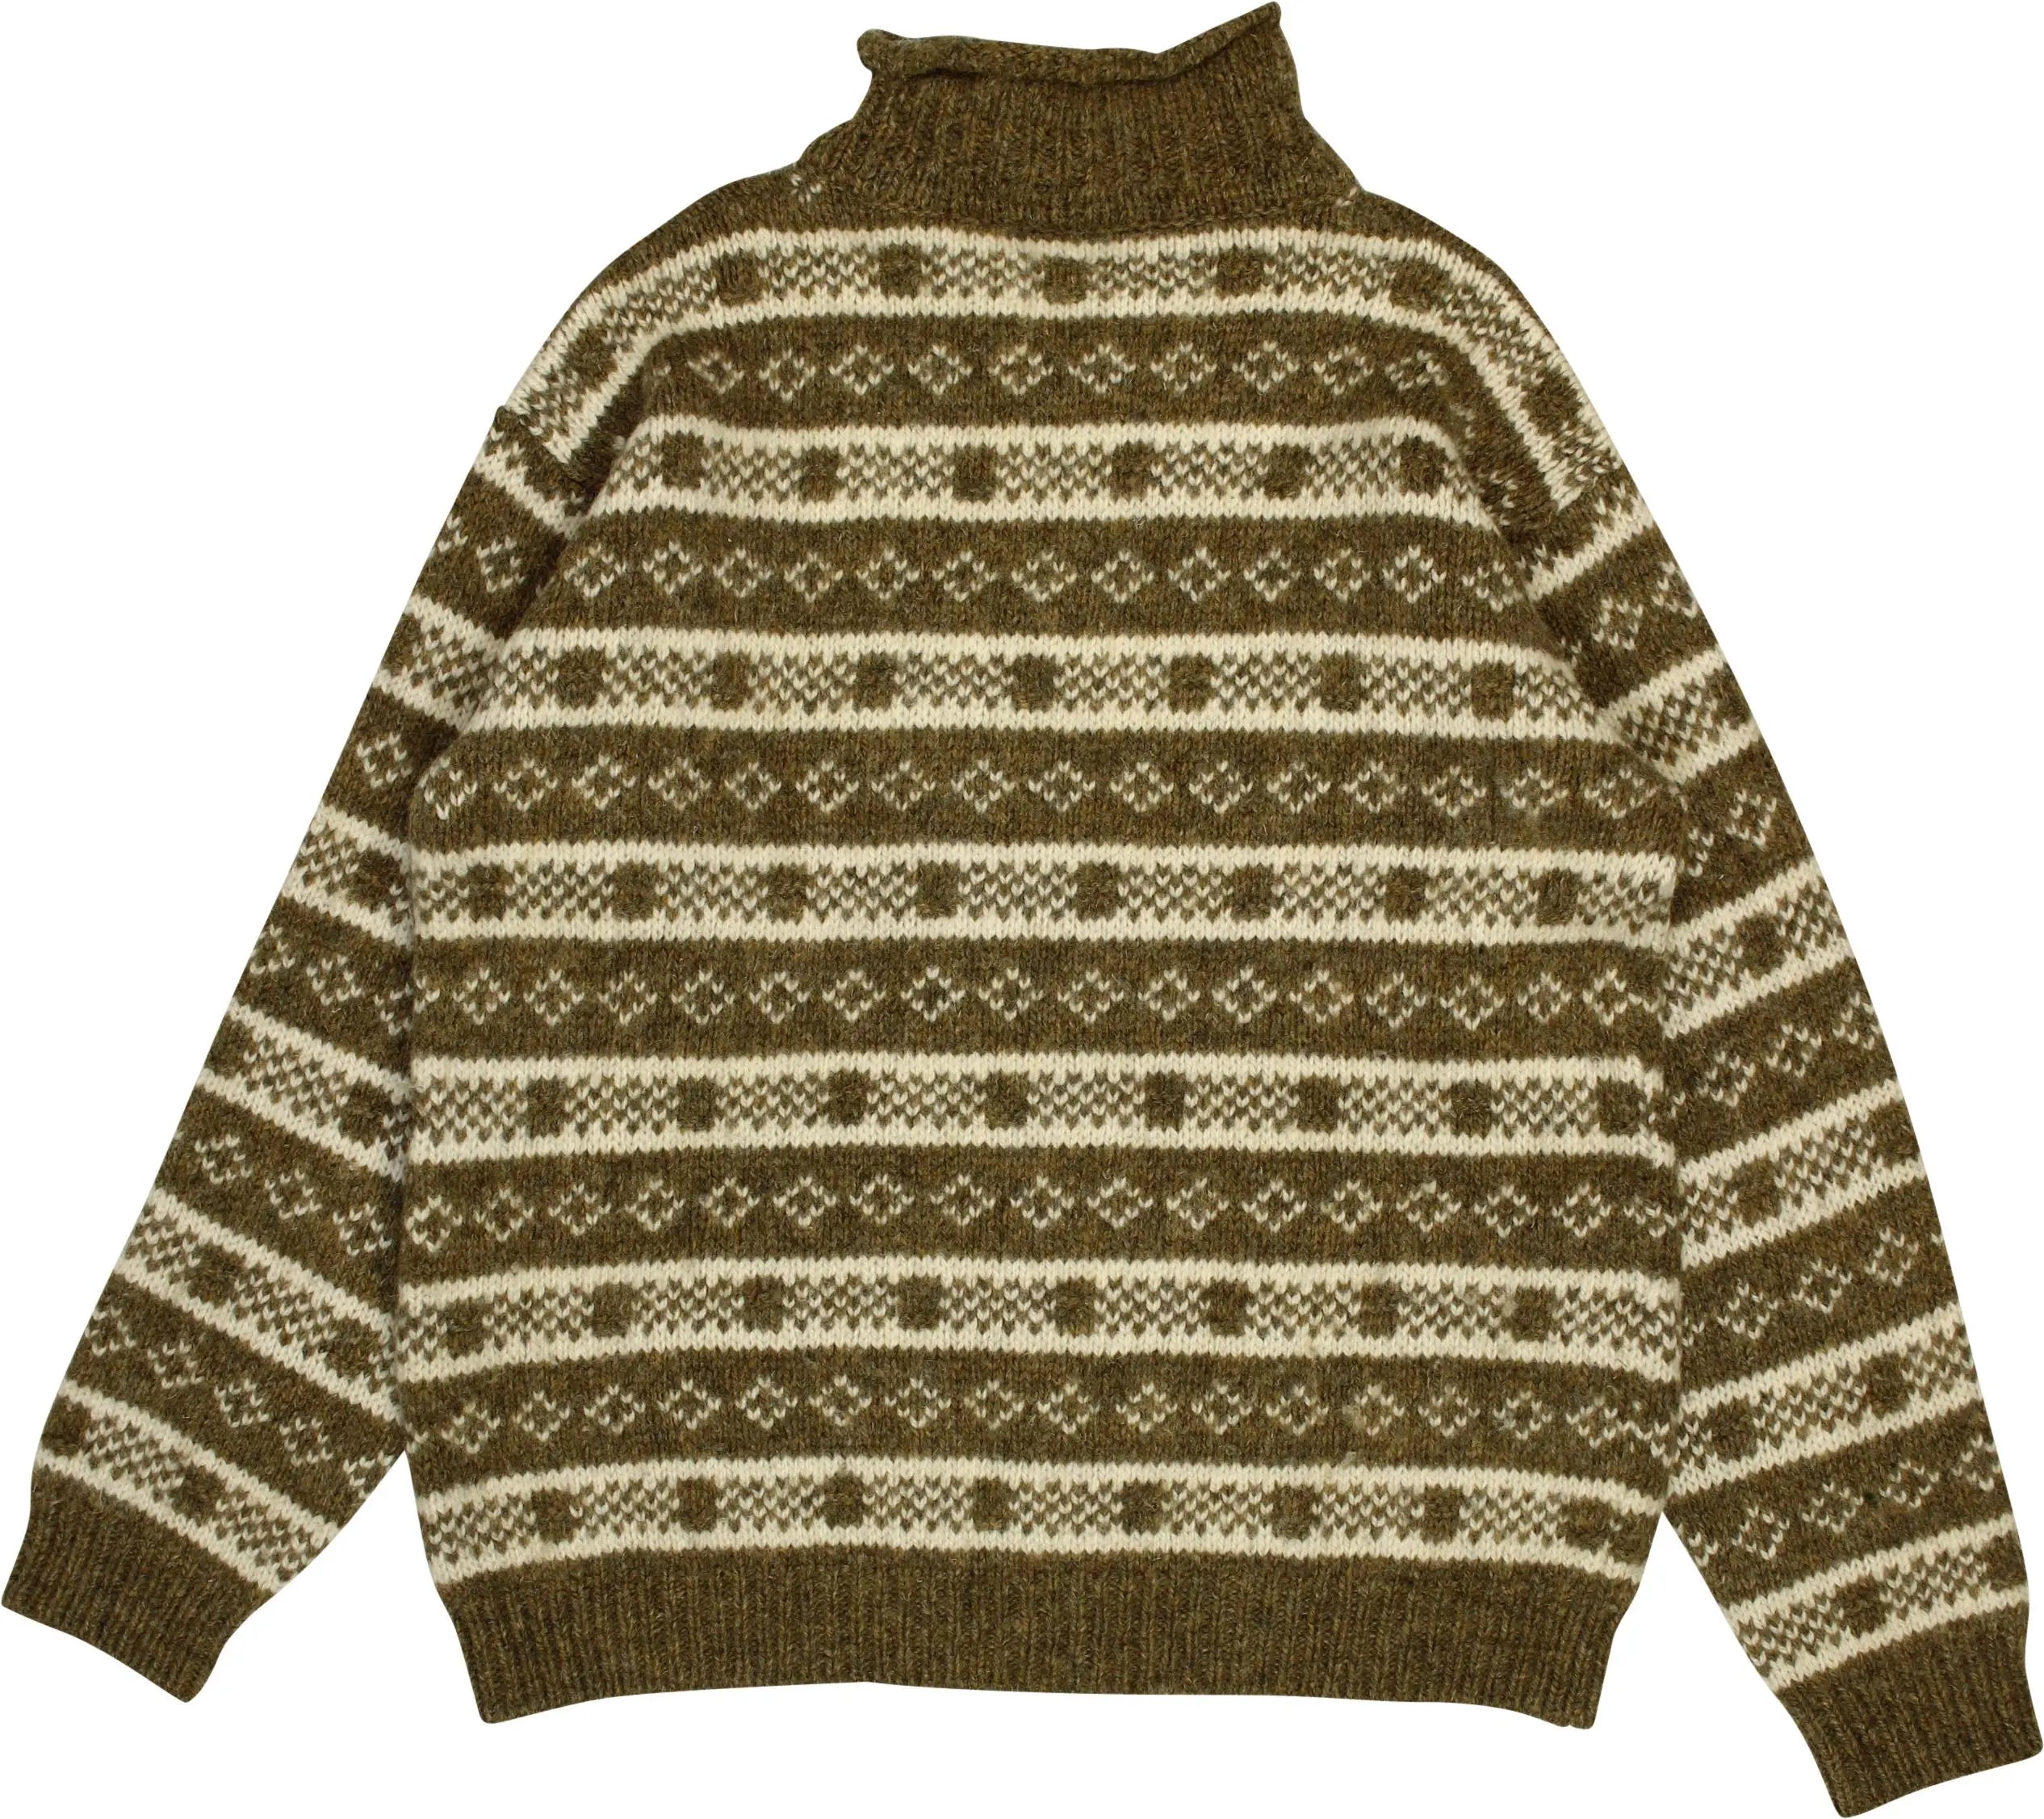 Devold - Wool Turtleneck Jumper- ThriftTale.com - Vintage and second handclothing